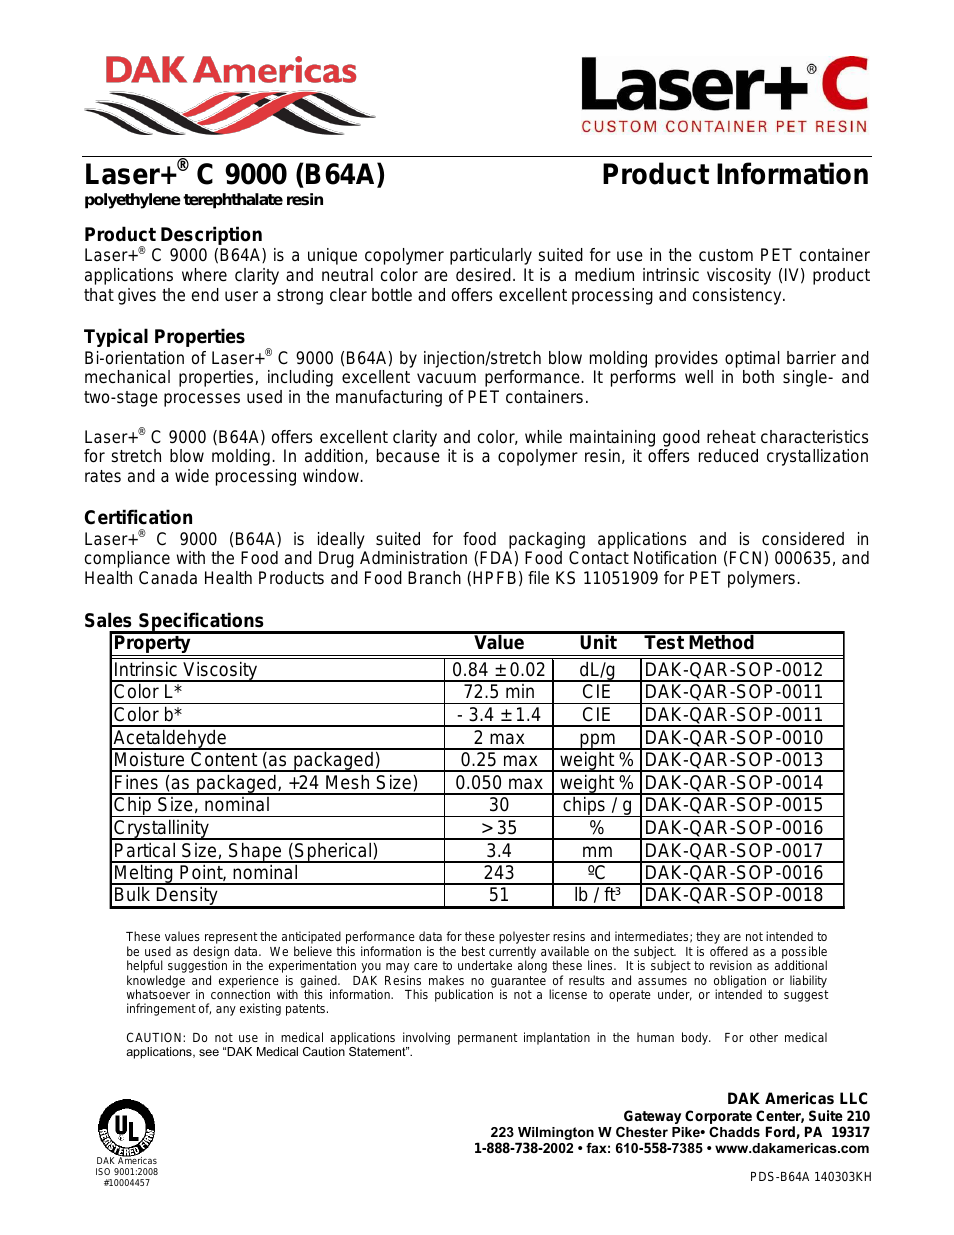 Laser+ C 9000 B64A